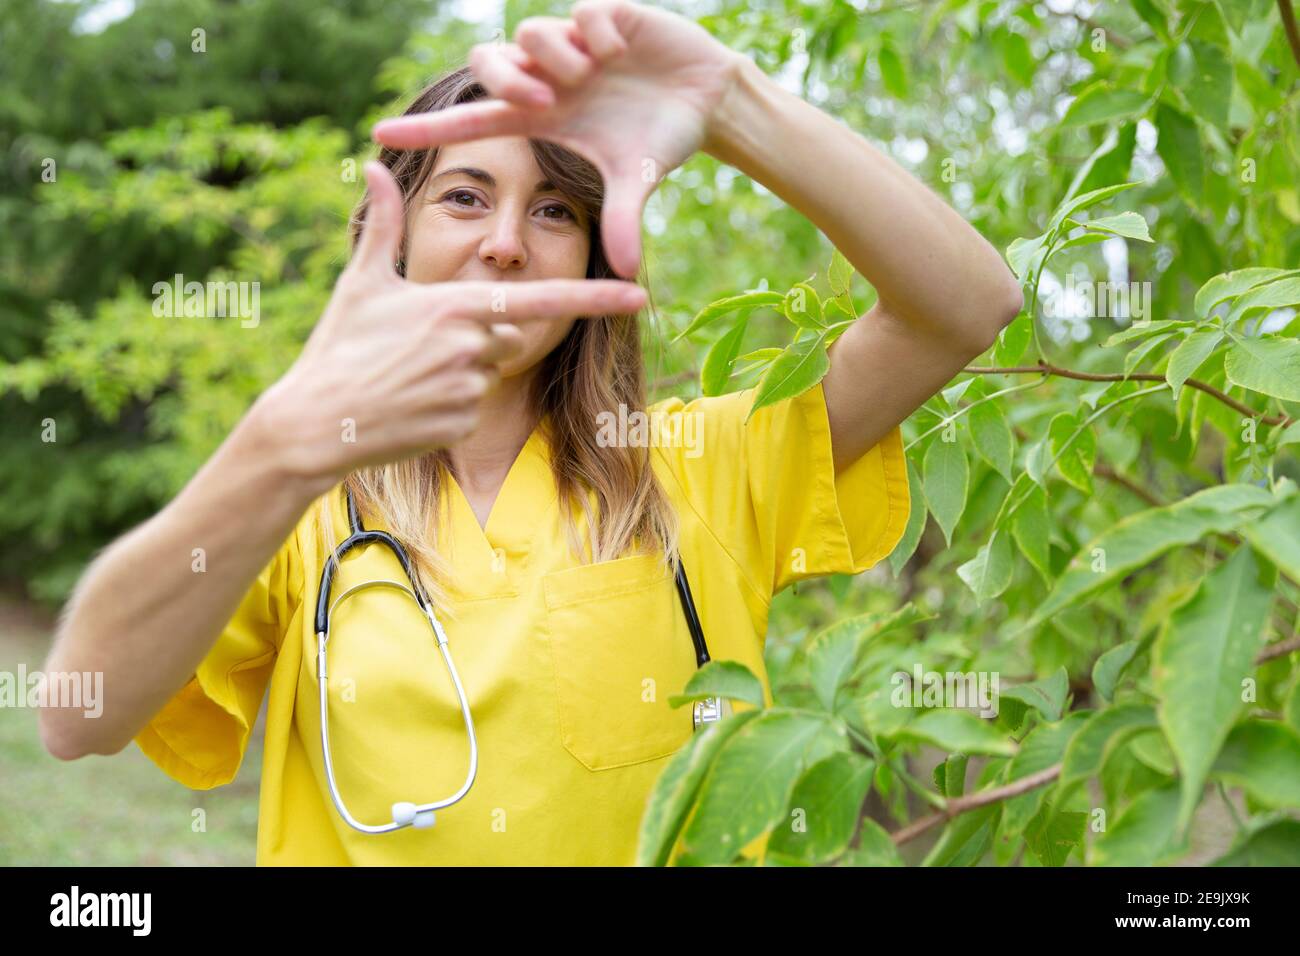 Eine junge Krankenschwester umrahmt ihr Gesicht mit ihren Händen als Selbstporträt. Sie ist in der Natur. Leerzeichen für Text. Stockfoto